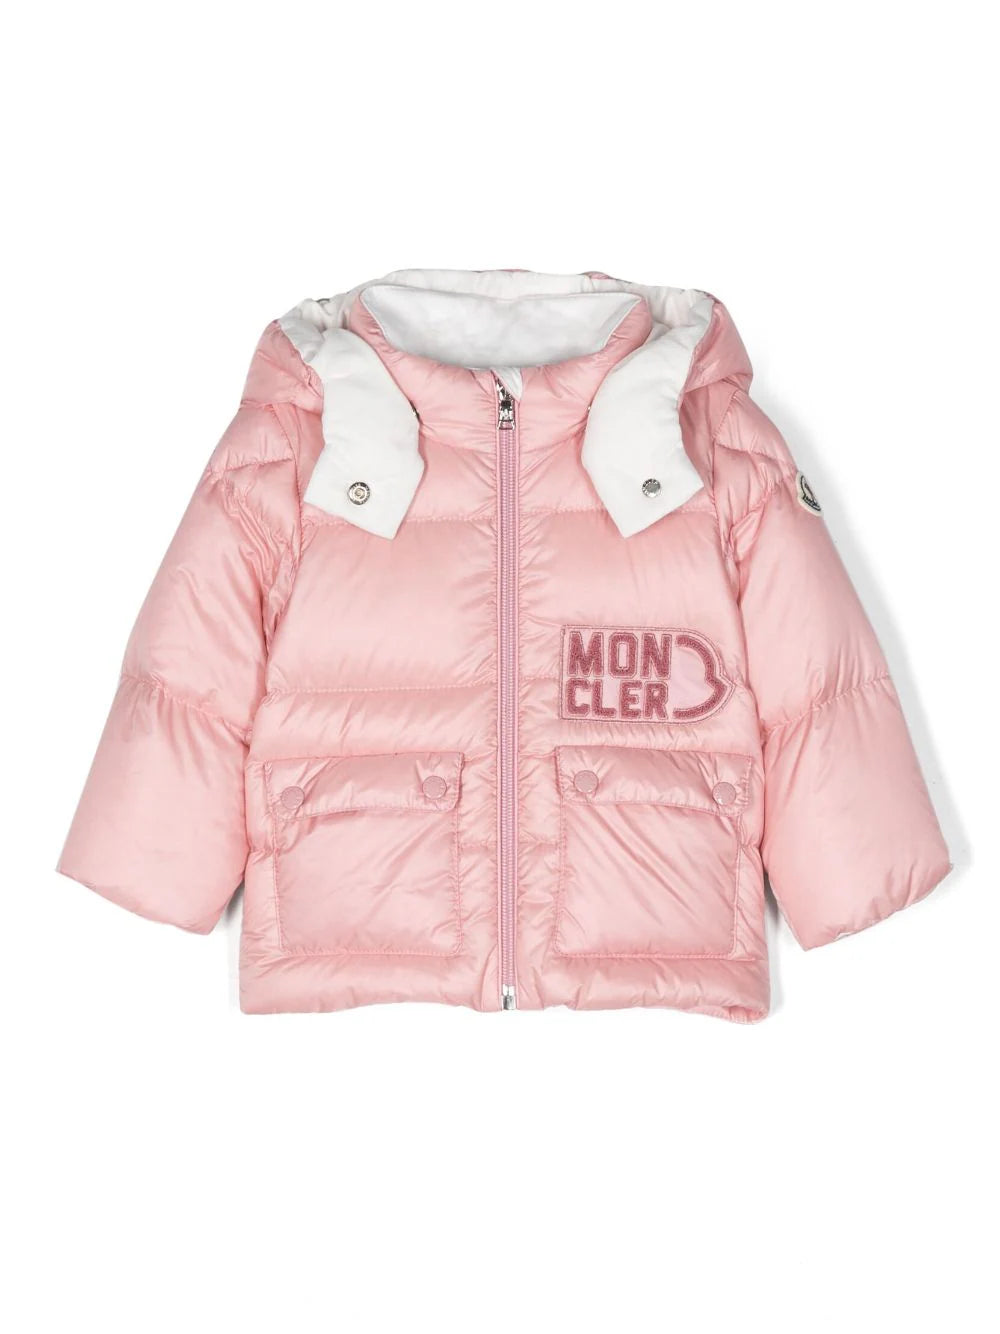 MONCLER BABY Girls Abbaye Padded Jacket Pink - MAISONDEFASHION.COM